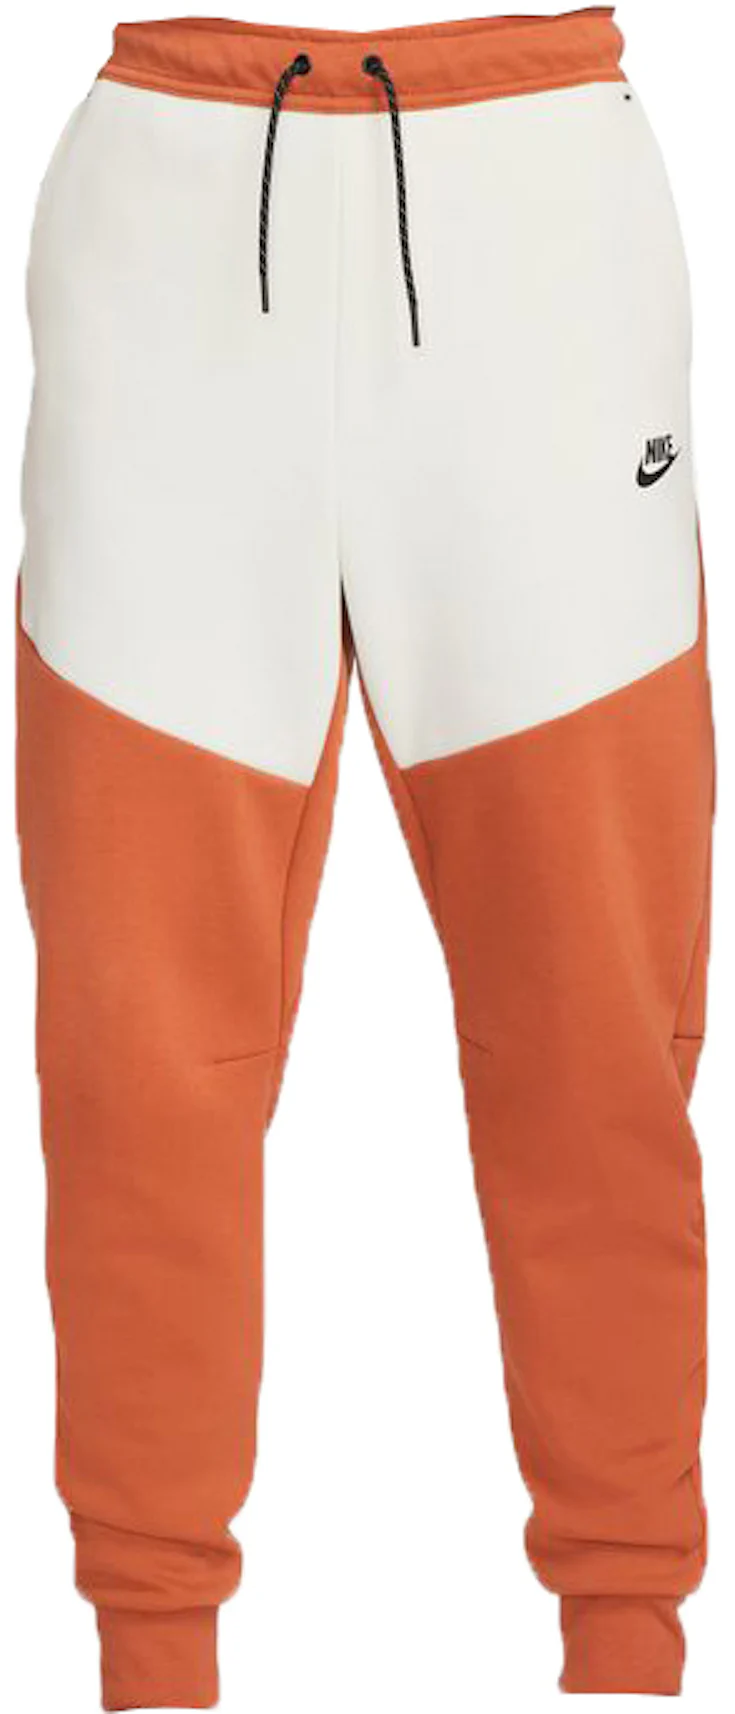 NIKE Men's Sportswear Tech Fleece Shorts Orange,Light Blue,Washed Blue NWT